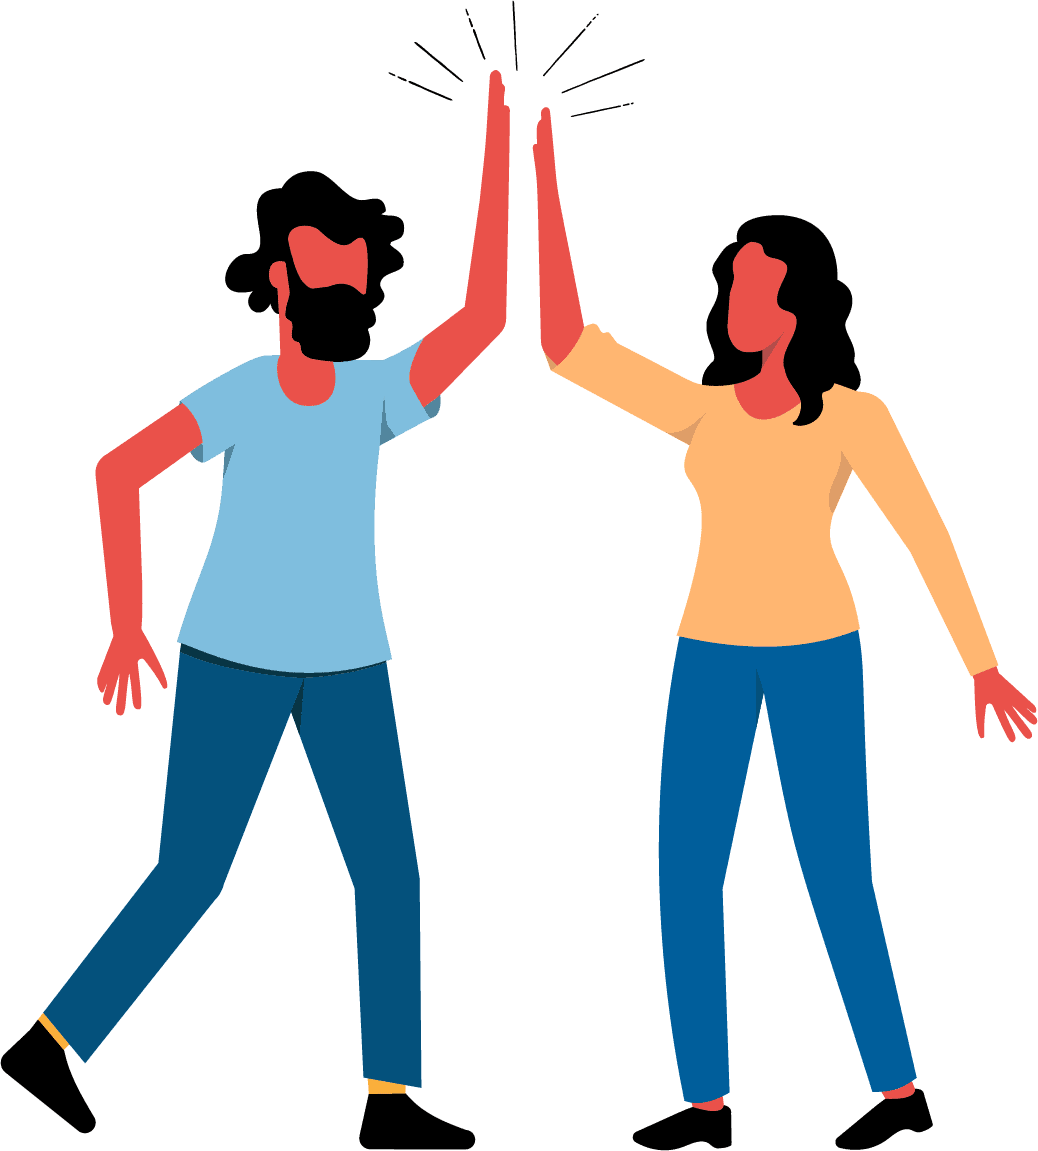 两个人类成年人使用庆祝或问候的常见手势，即两个人举起手臂拍打对方张开的手掌。